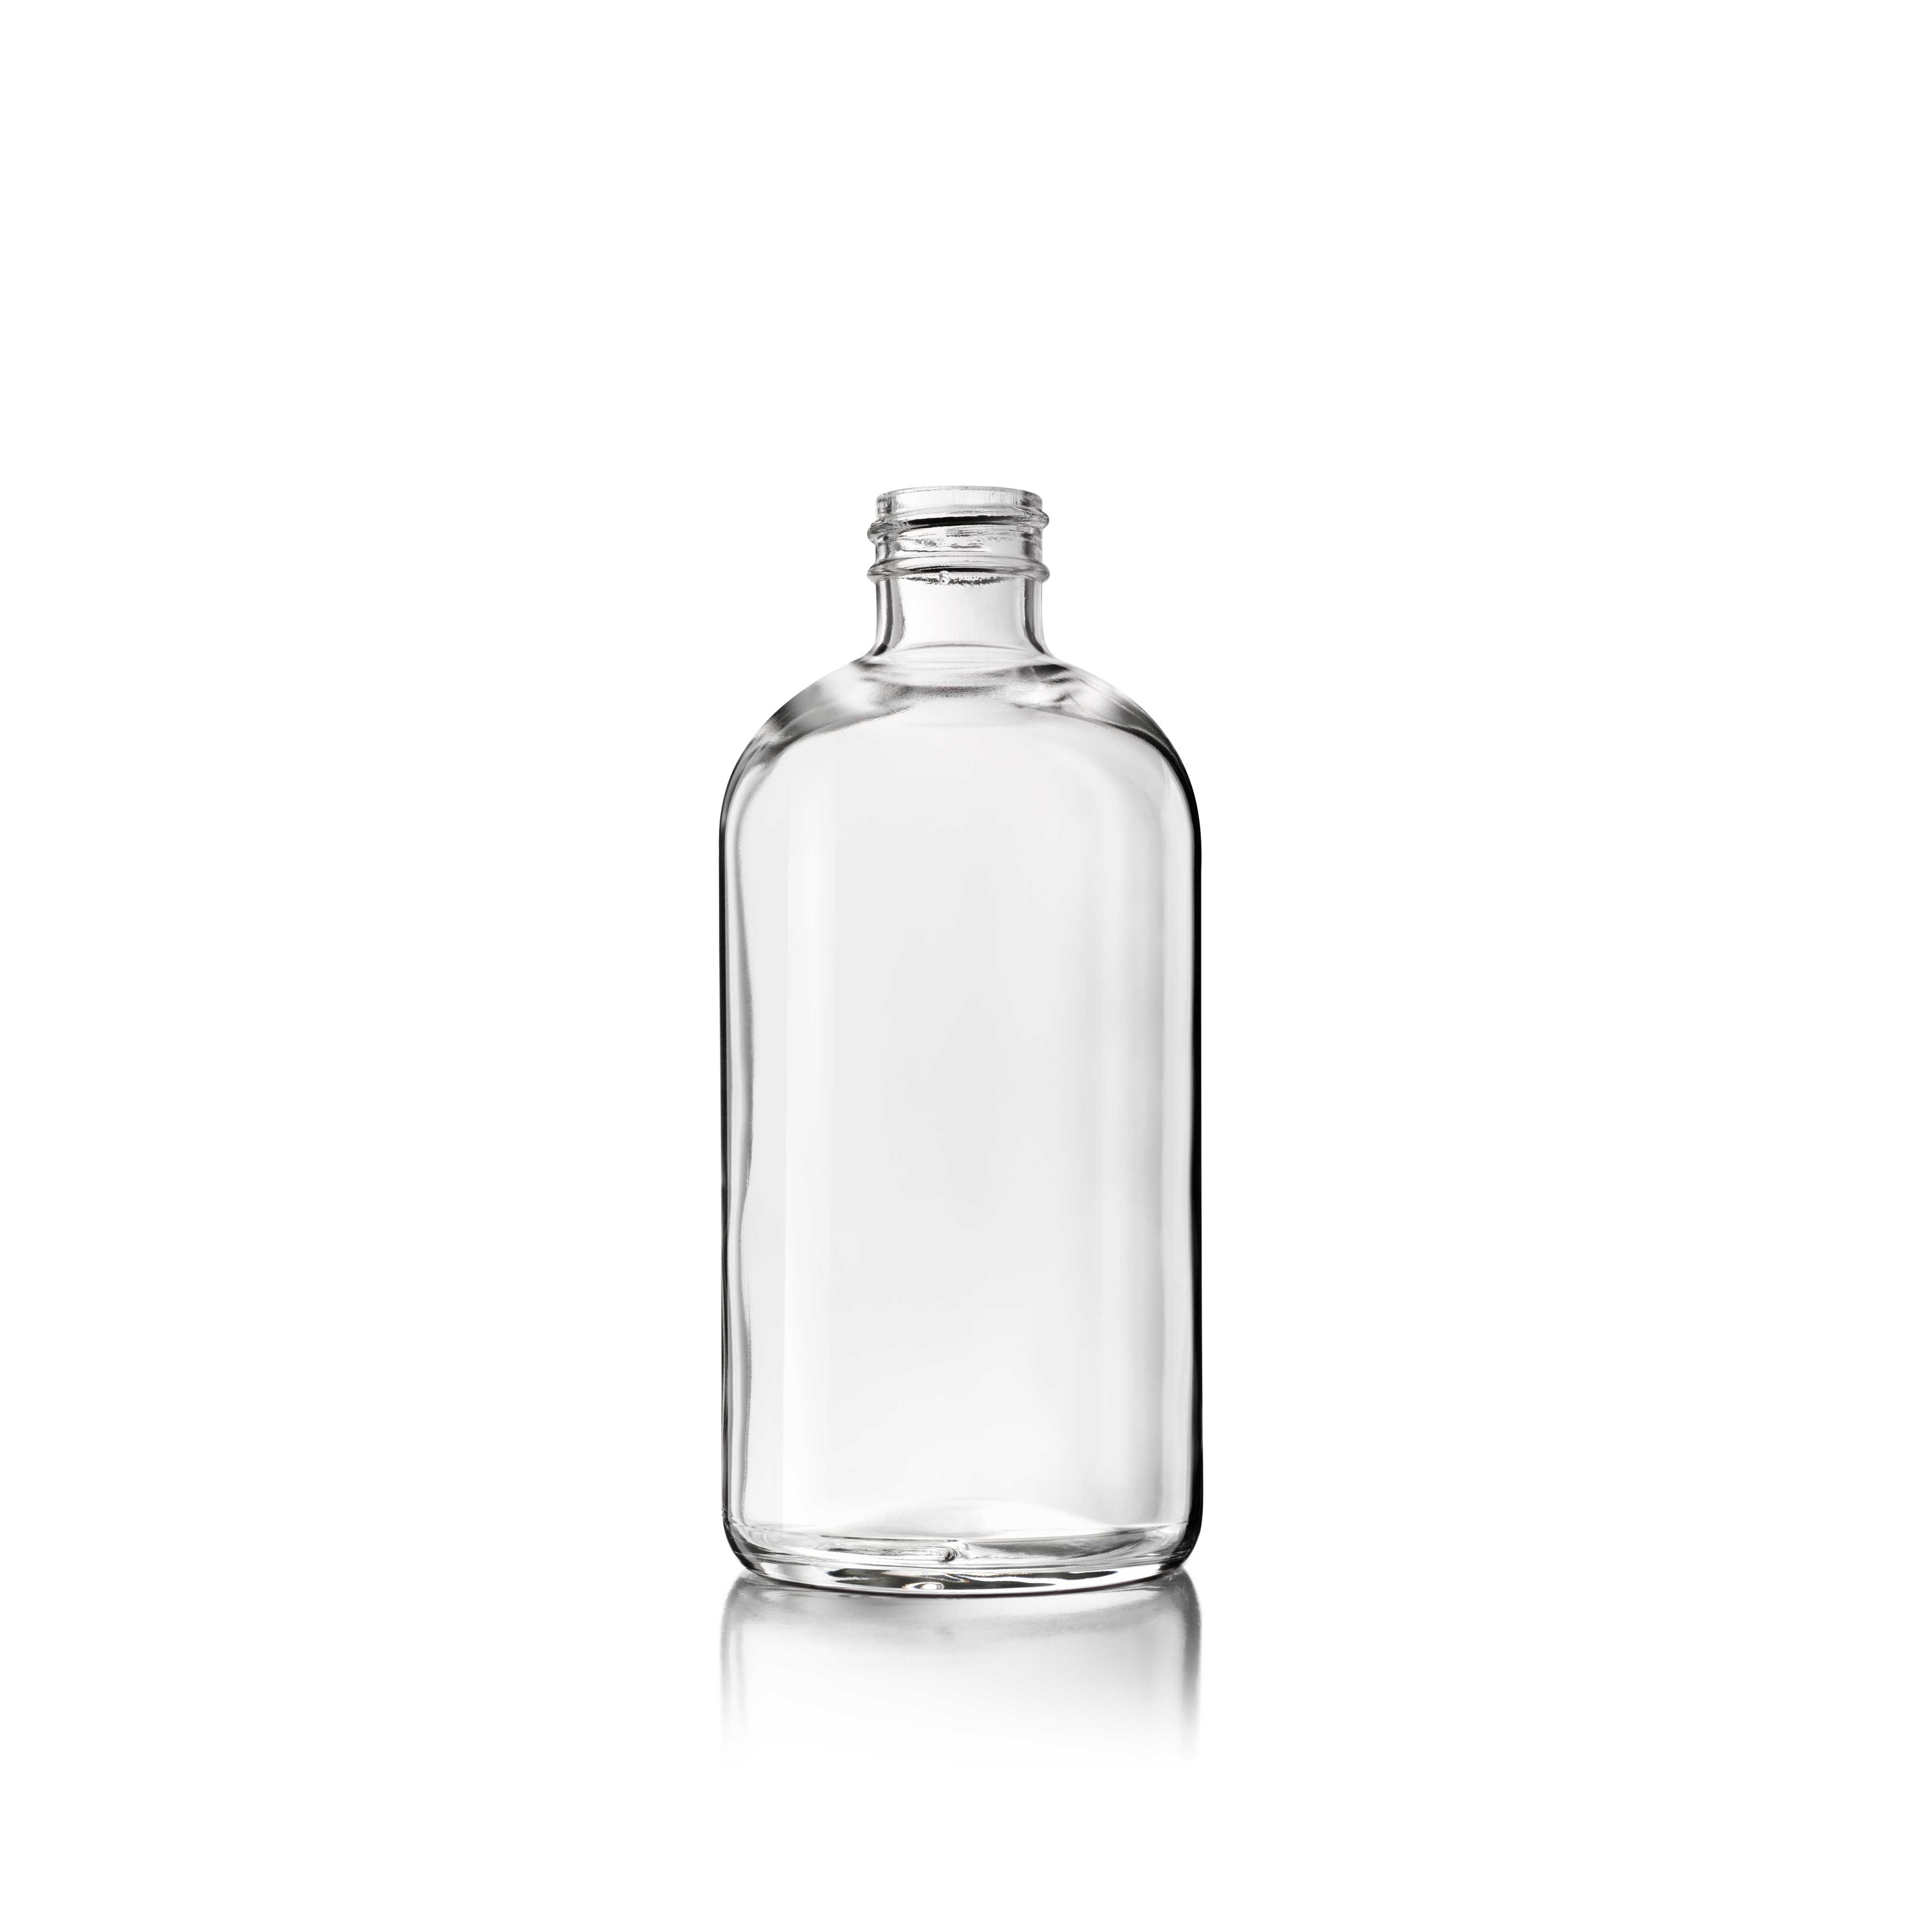 Cosmetic bottle Linden Light Weight 250ml, 24/410, Flint